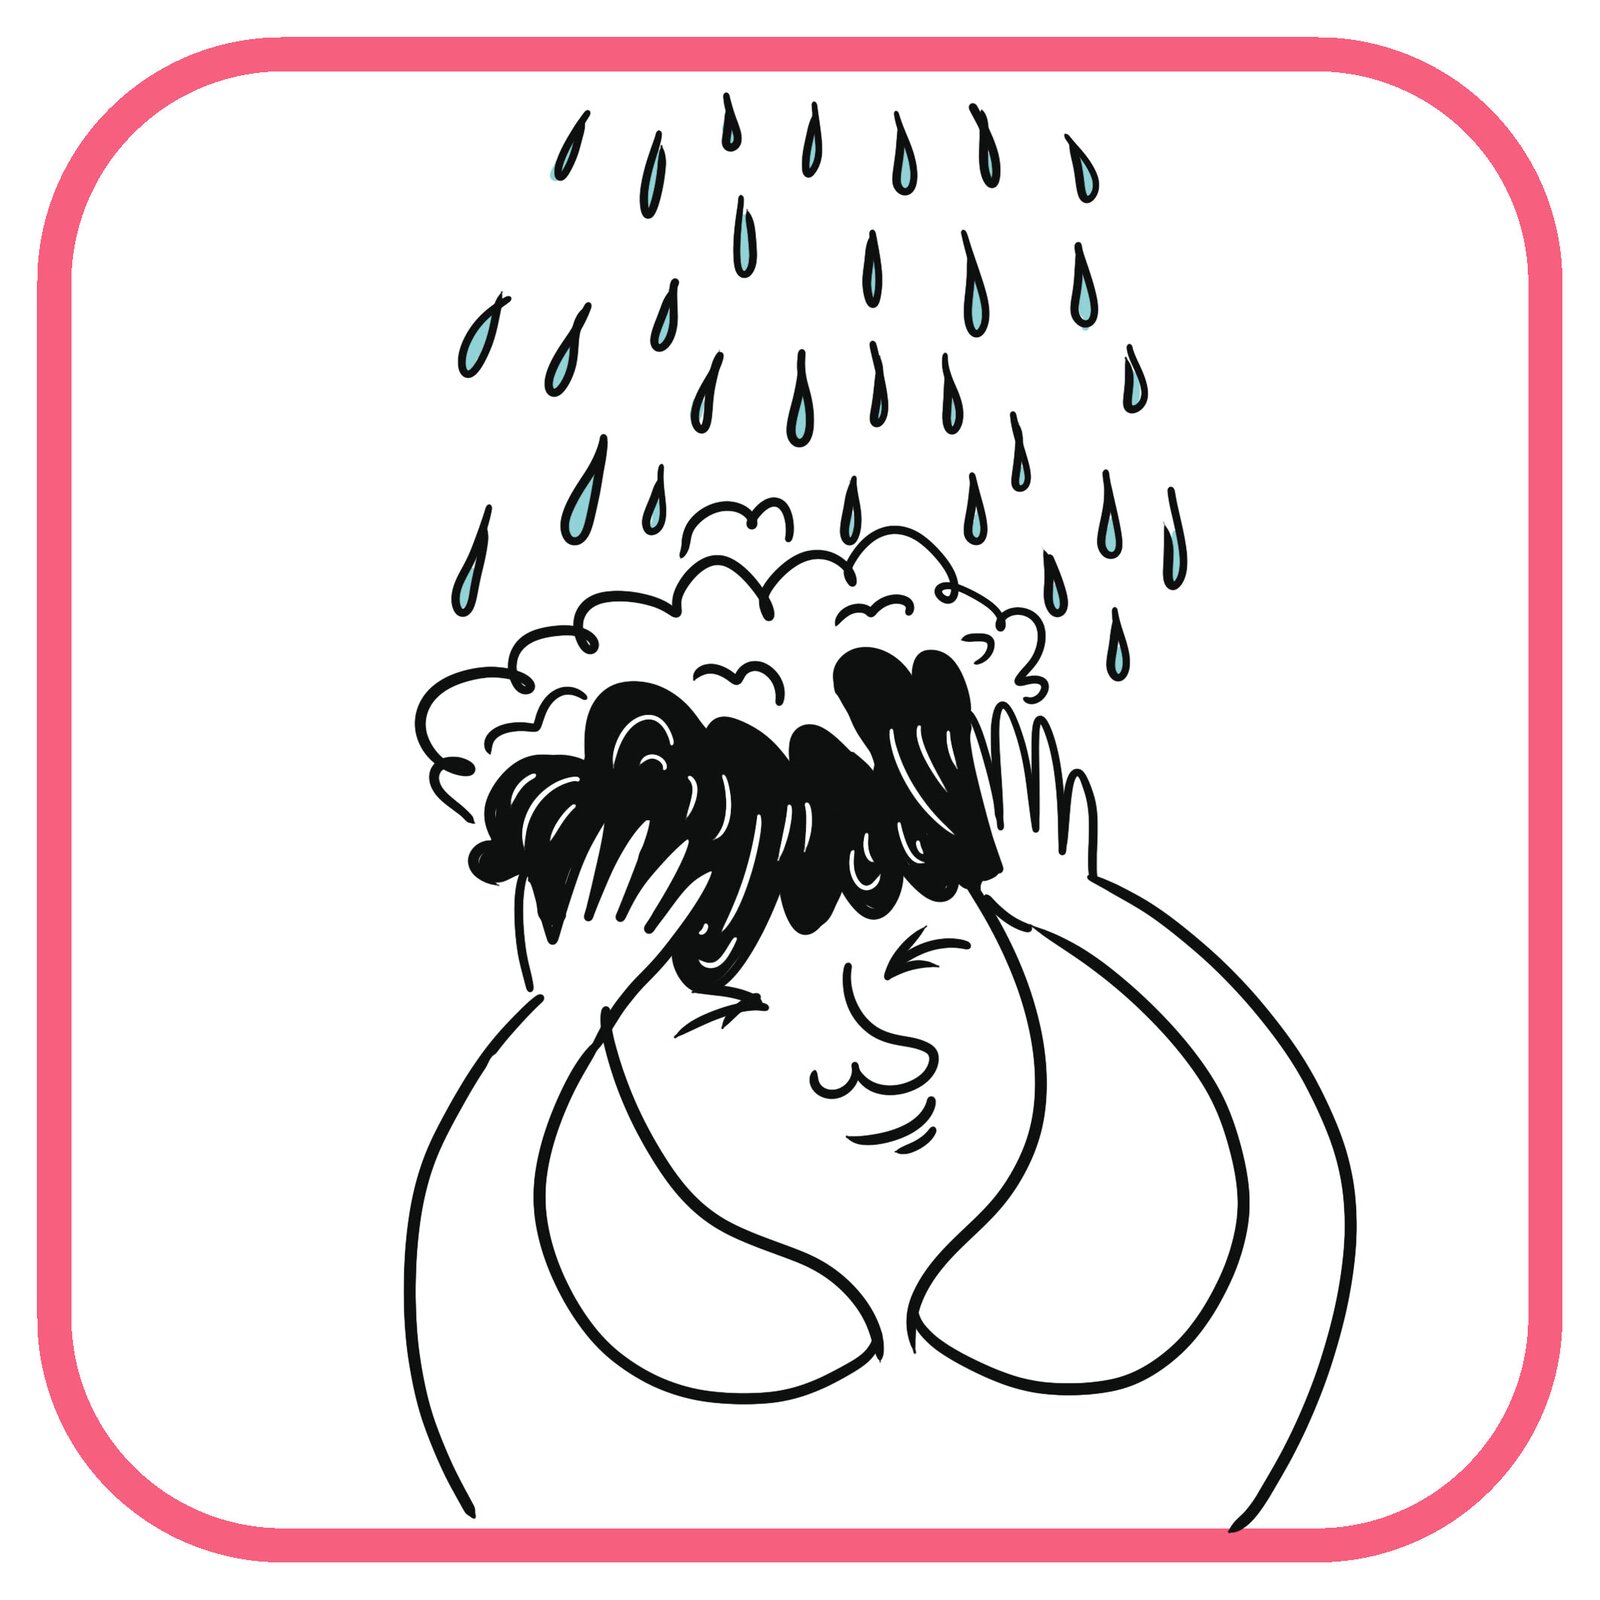 Zadowolony chłopiec stoi pod prysznicem. Ma pianę na włosach. Myje włosy. Na jego głowę spadają krople wody.